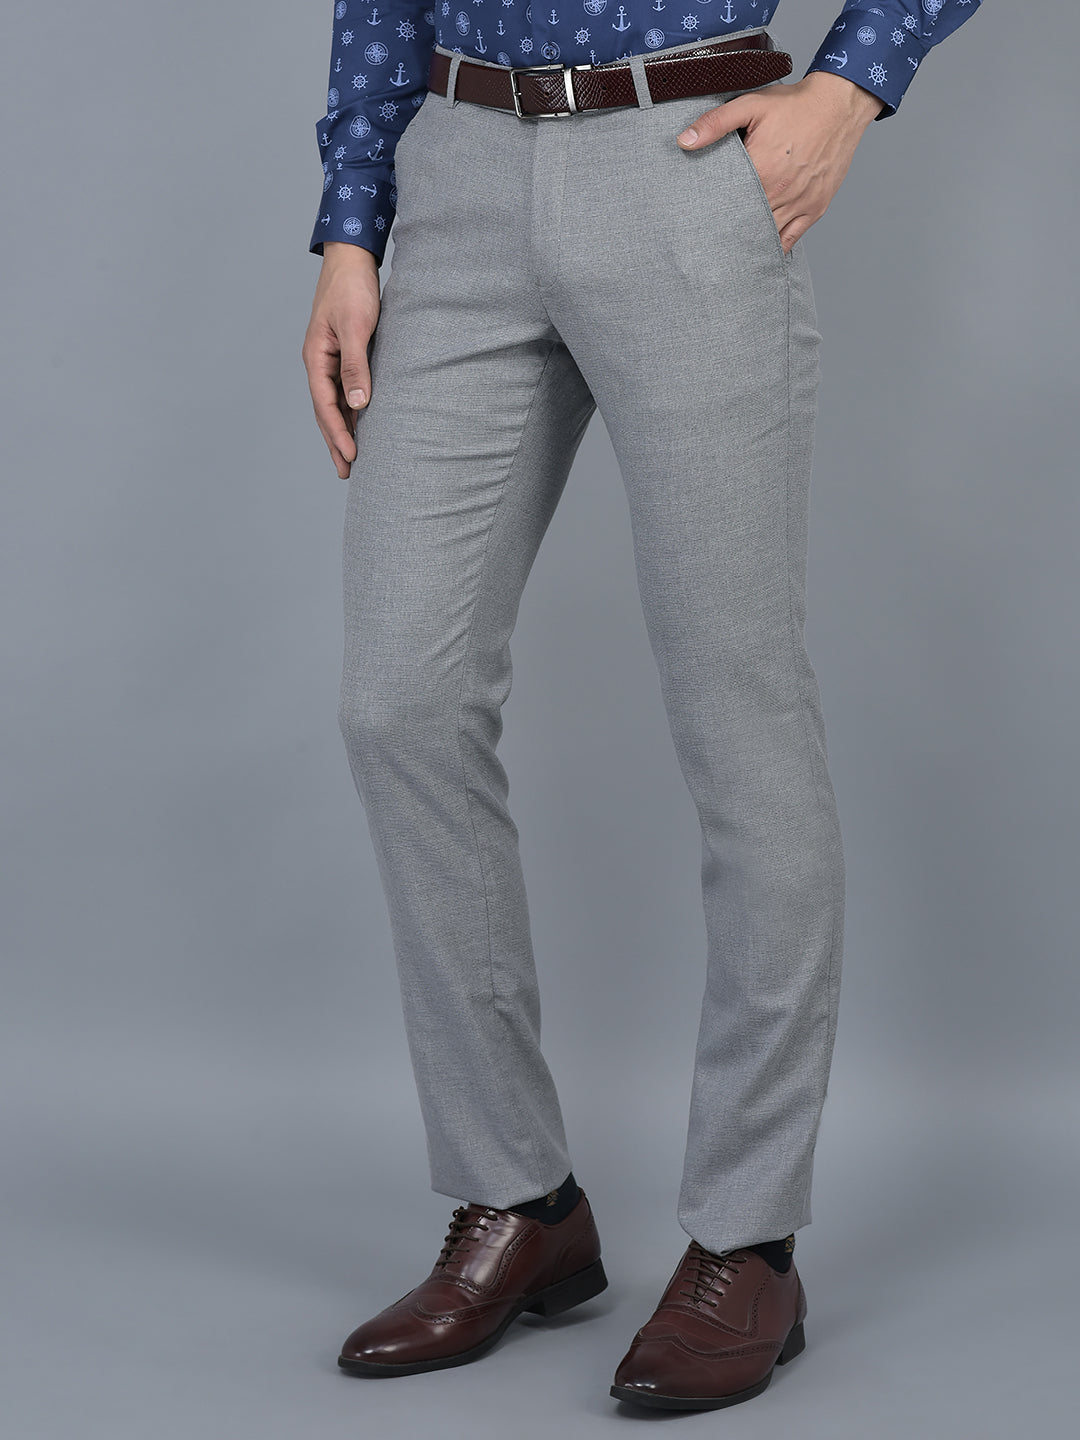 Buy Highlander Light Grey Slim Fit Casual Trouser for Men Online at Rs.698  - Ketch